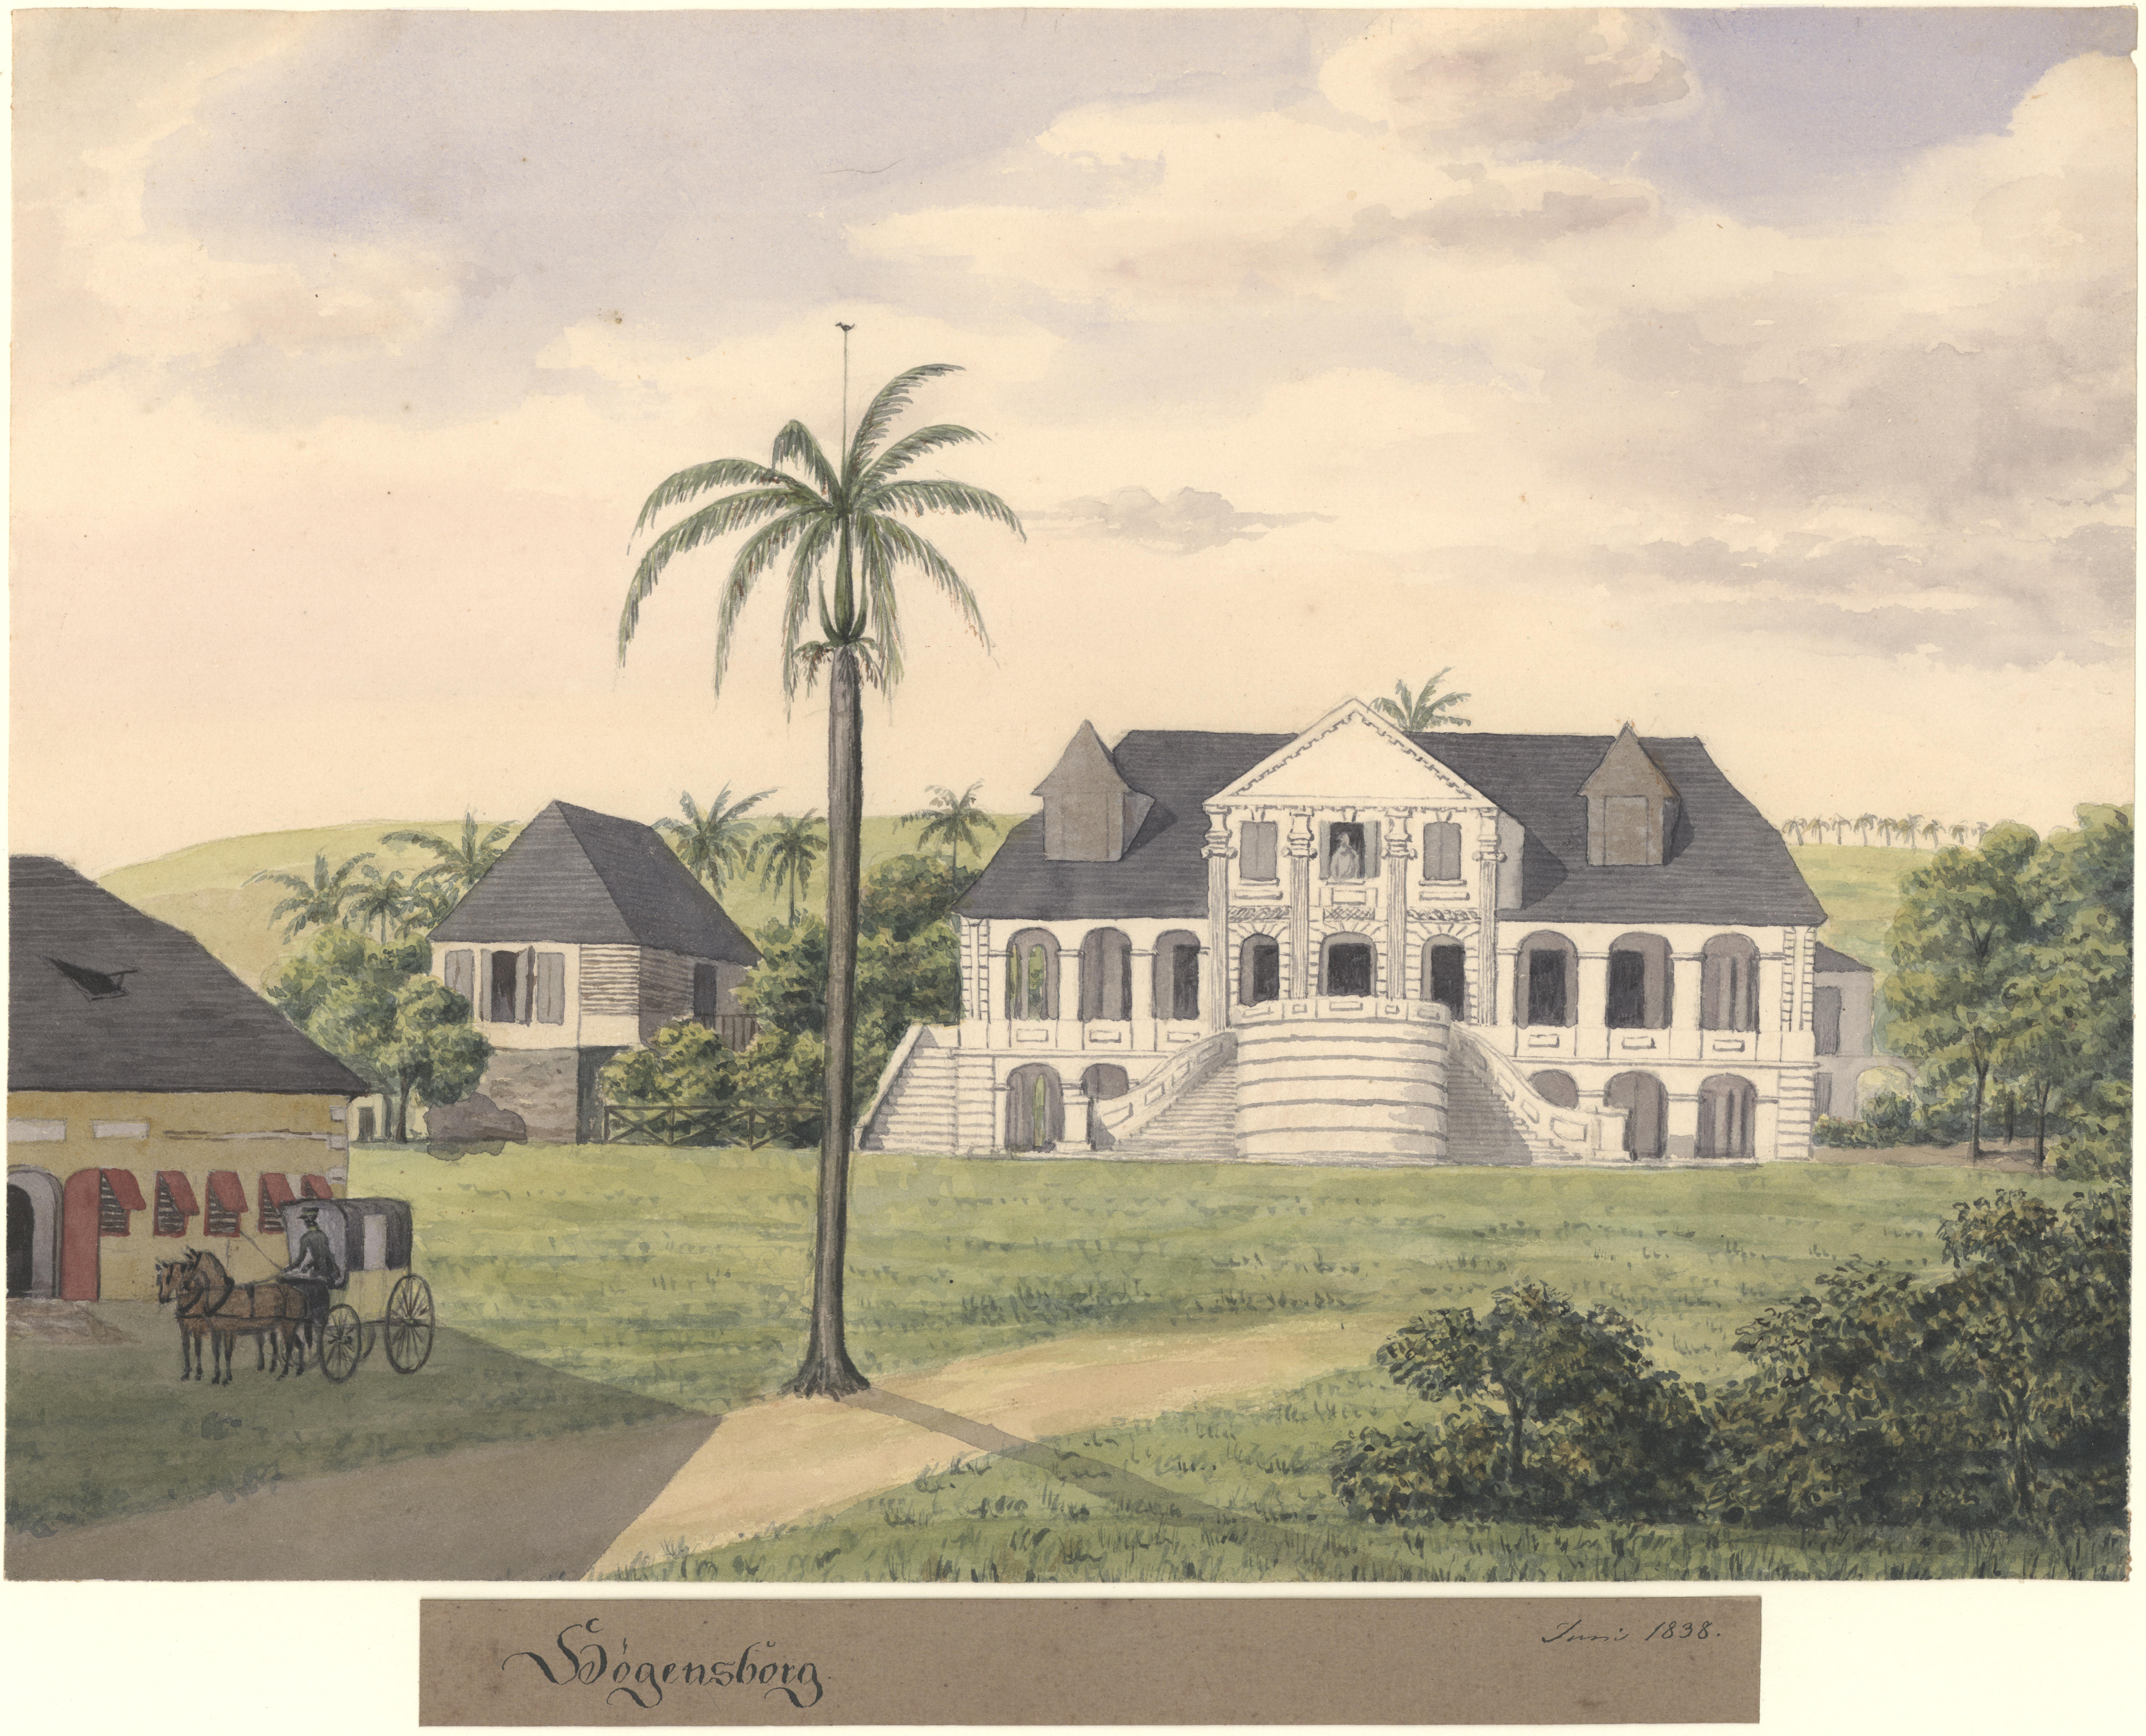 The Høgensborg estate on St. Croix, Danish West Indies drawn by Frederik von Scholten June 1838.